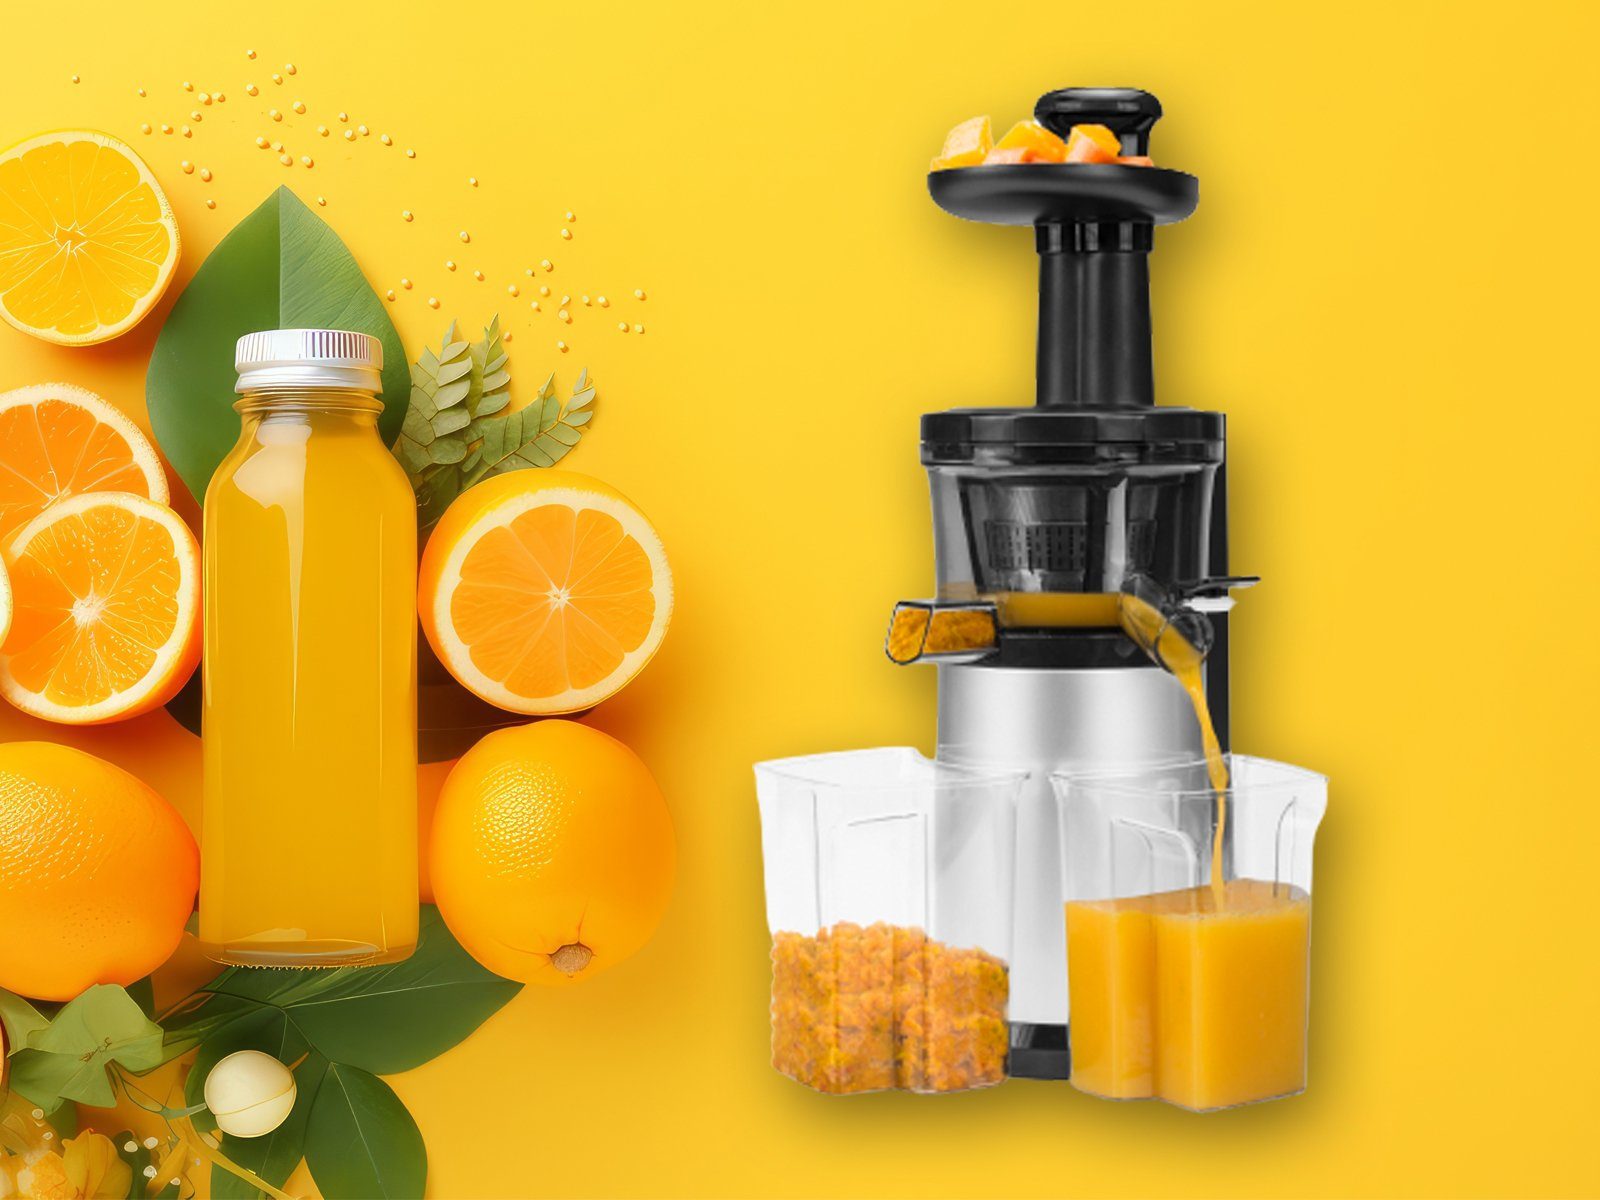 Tristar Entsafter, 150 W, Slow Juicer Kalt Saftpresse Multi Vitamin Frucht  Obst Orangen & Gemüse, Perfekt für eine gesunde Lebensweise mit frischen  Obst- und Gemüsesäften